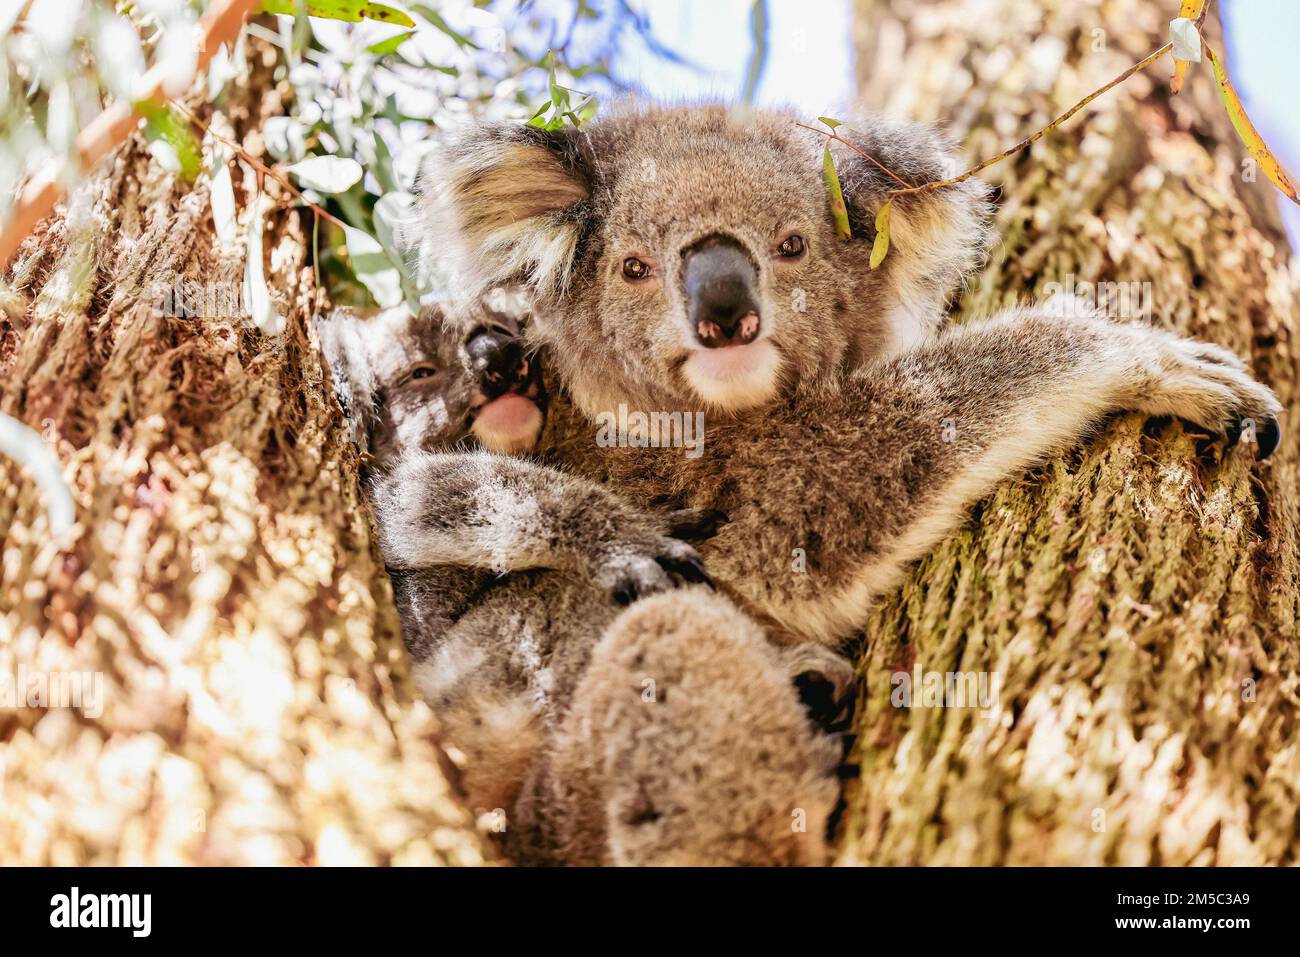 Madre e bambino koala seduti insieme nell'albero australiano dell'eucalipto Foto Stock